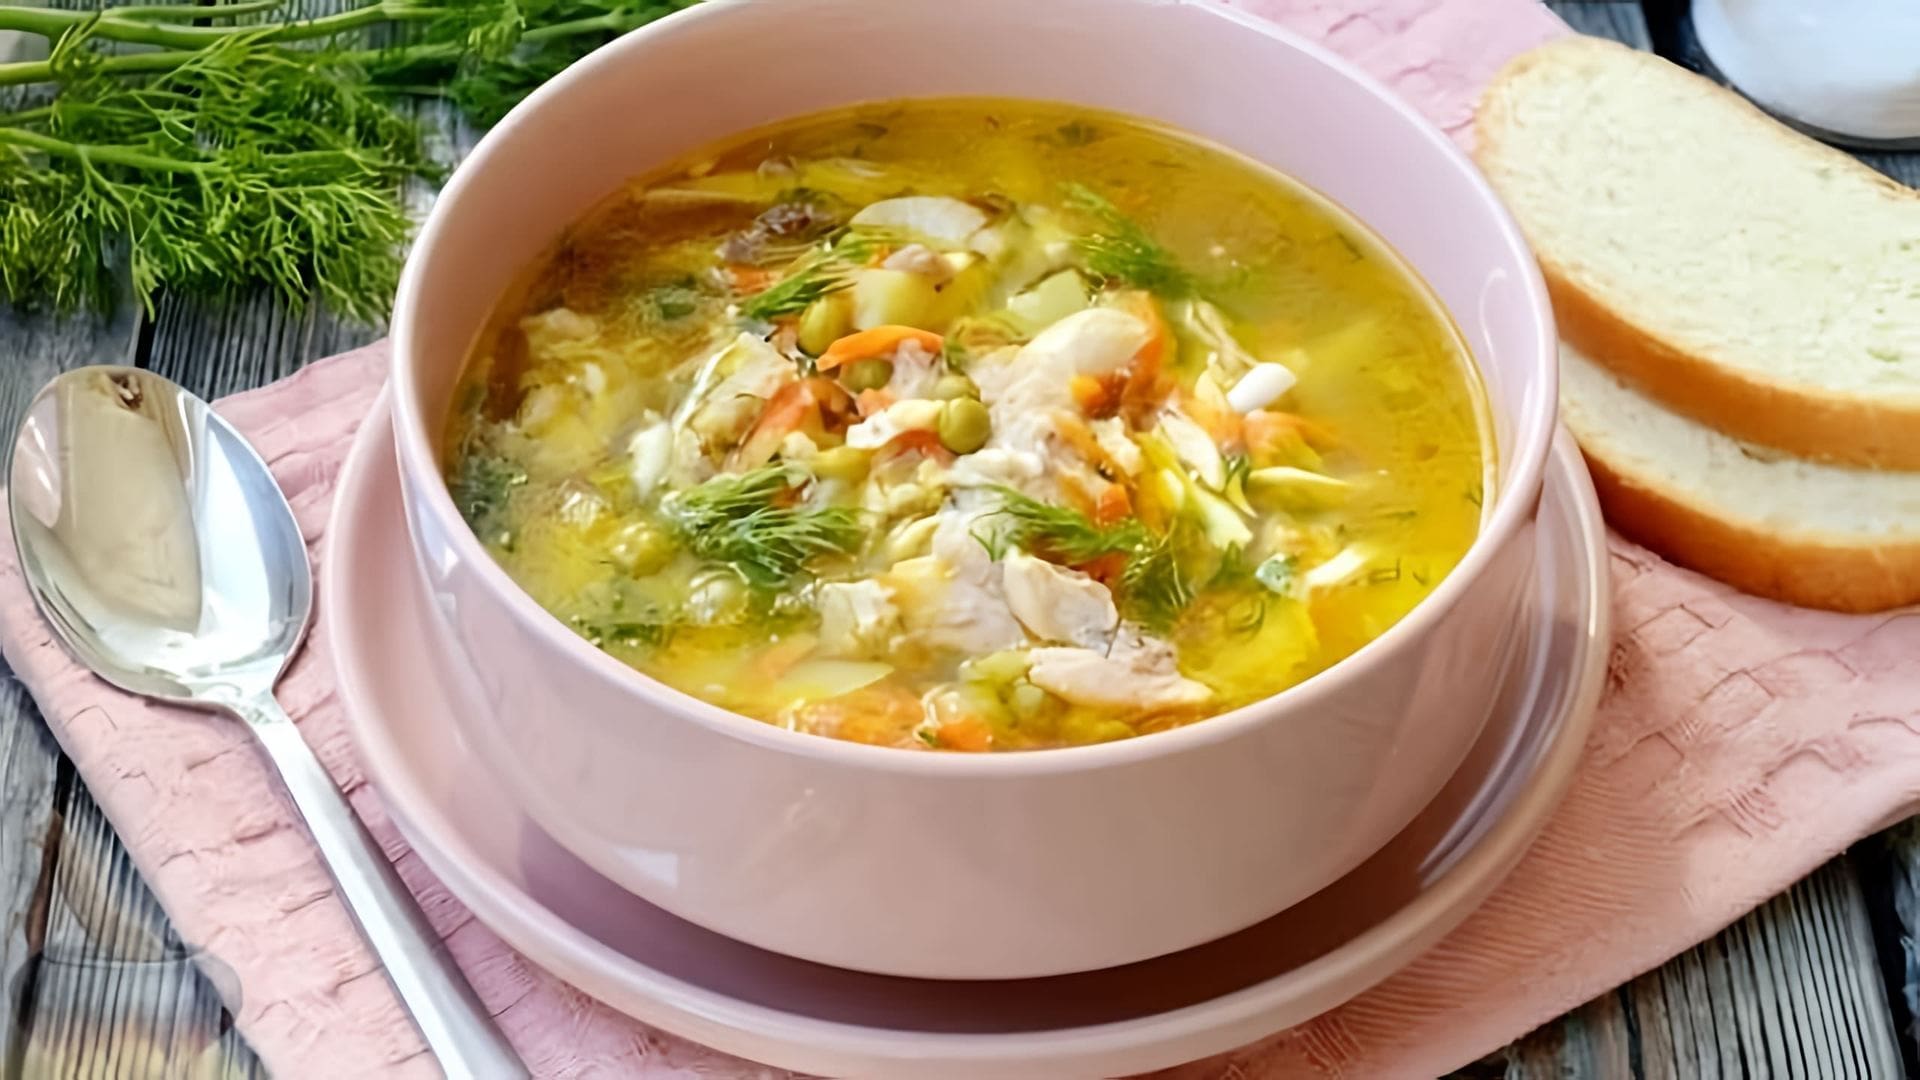 В этом видео демонстрируется рецепт приготовления куриного супа с консервированным горошком и яйцом